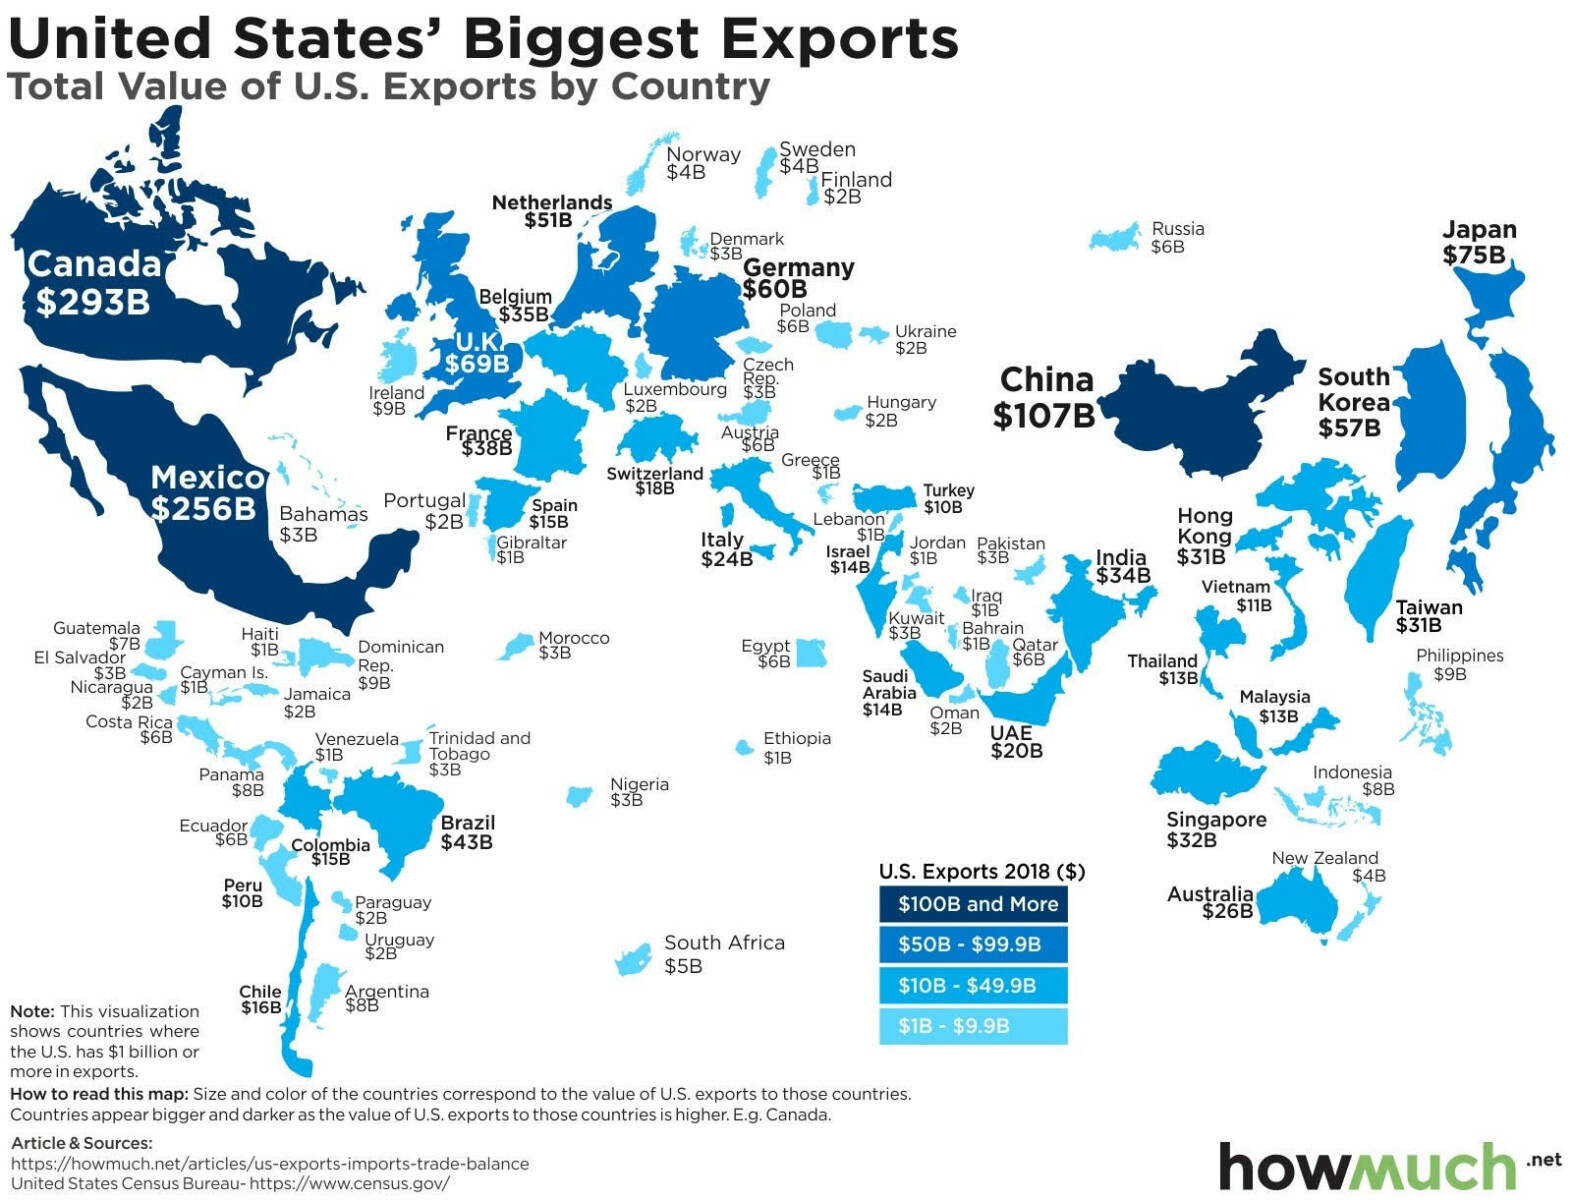 Lo que importa del mundo y lo que exporta al mundo los EEUU